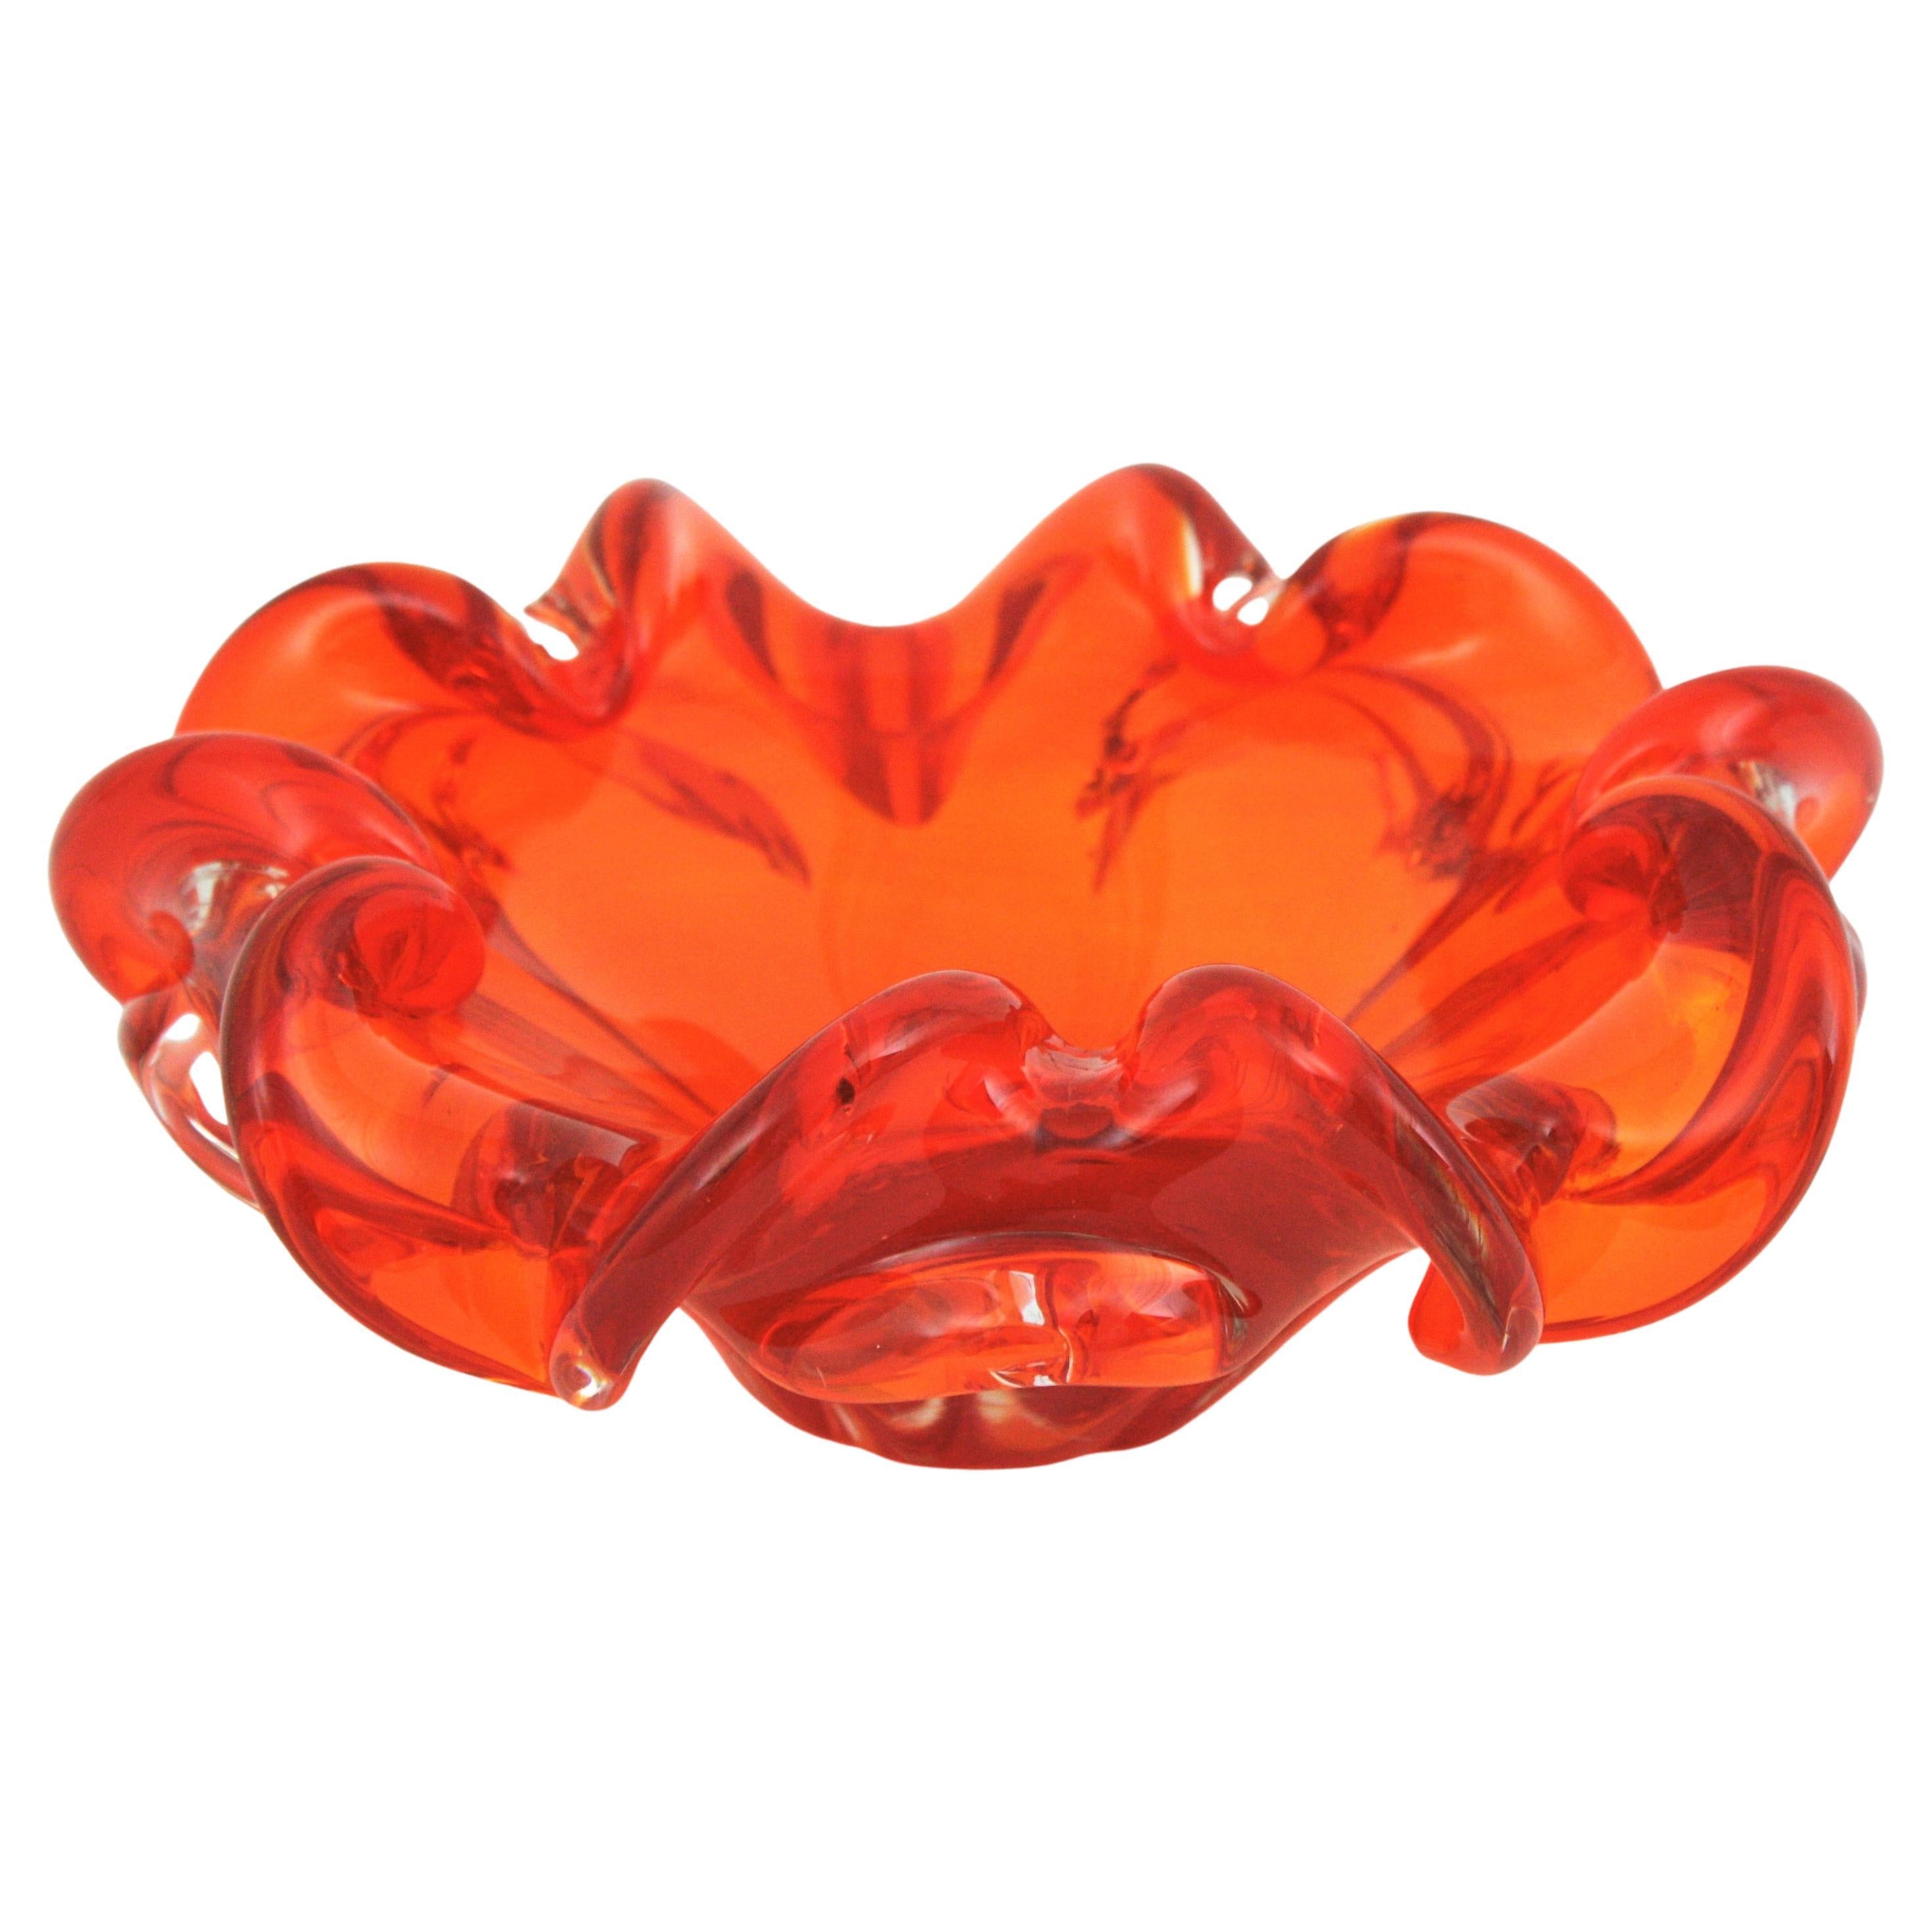 Murano Art Glass Flower Shaped Bowl, Aschenbecher oder vide-poche, Italien 1950er-1960er Jahre.
Wird Seguso Vetri d'Arte zugeschrieben.
Orange und klares Glas.
Wunderschöne mundgeblasene Murano-Schale in Form einer Blume in leuchtendem Orange und